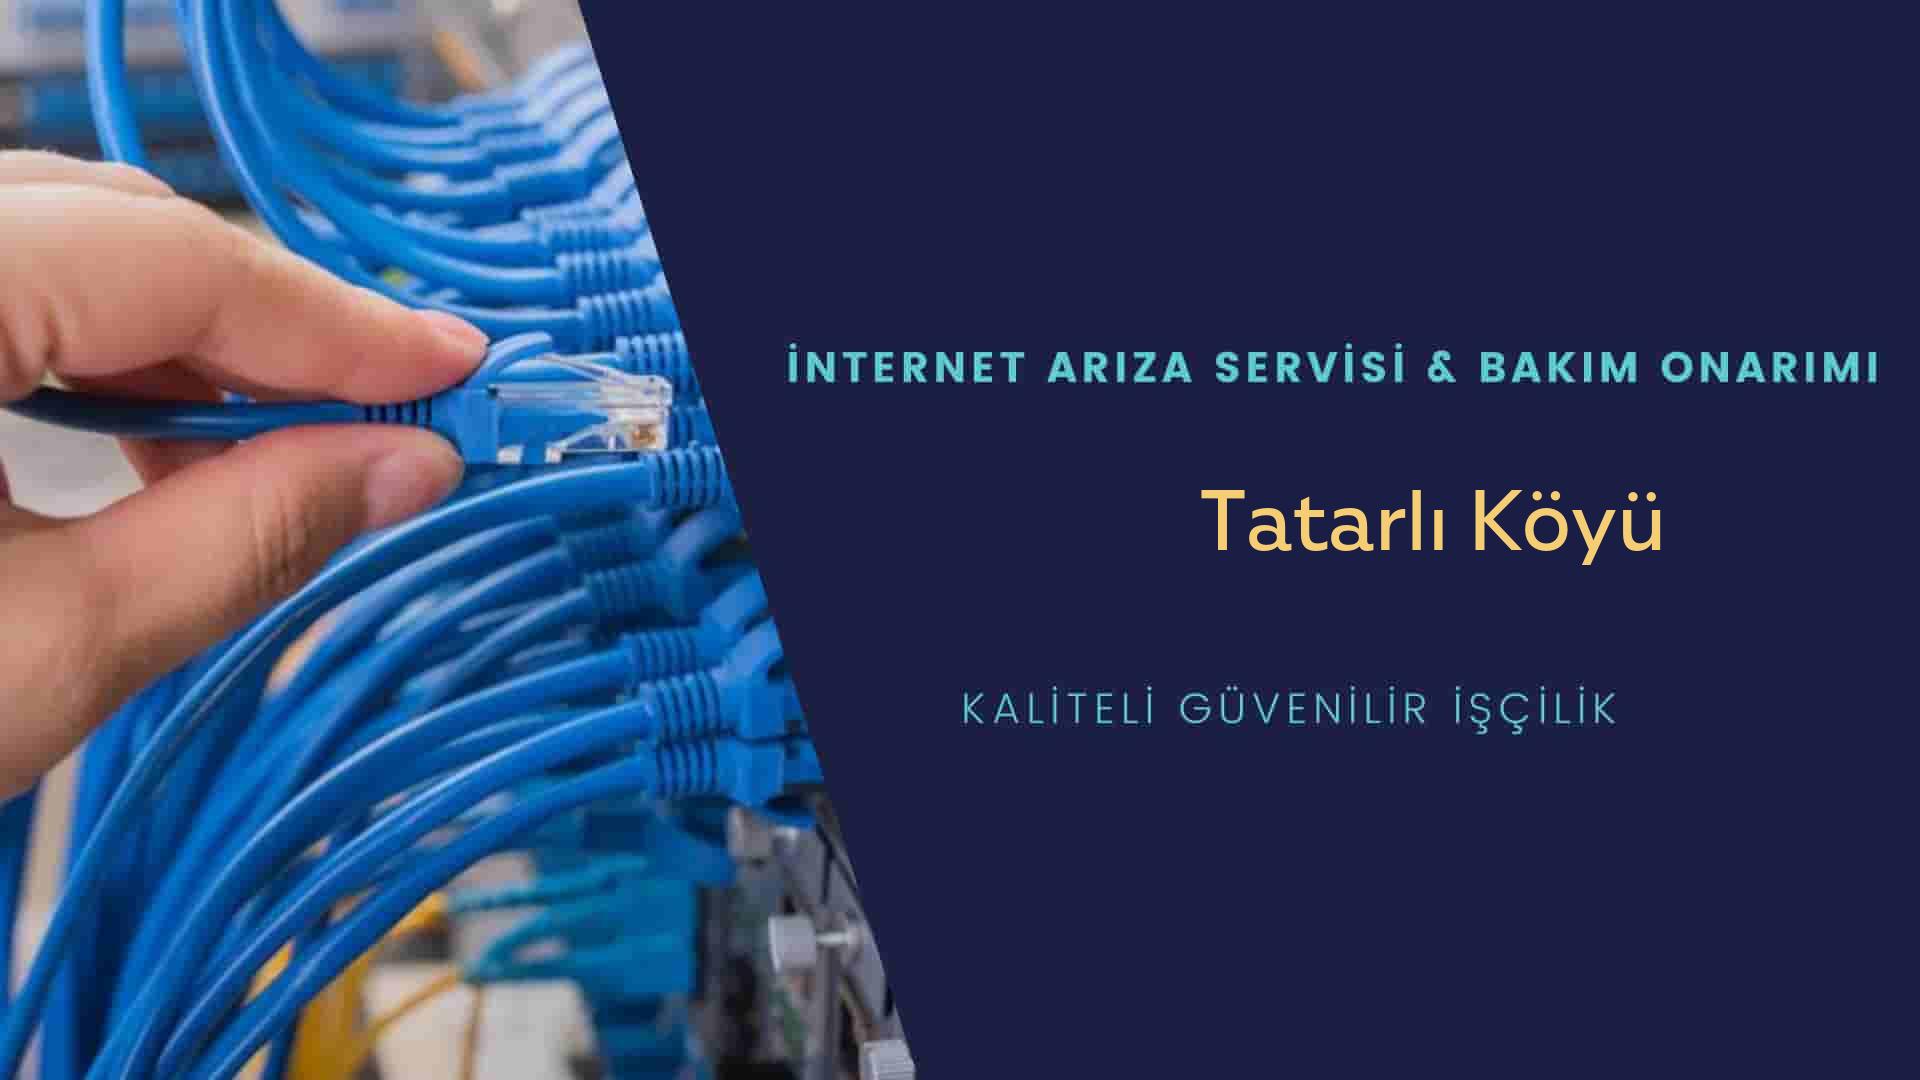 Tatarlı Köyü internet kablosu çekimi yapan yerler veya elektrikçiler mi? arıyorsunuz doğru yerdesiniz o zaman sizlere 7/24 yardımcı olacak profesyonel ustalarımız bir telefon kadar yakındır size.